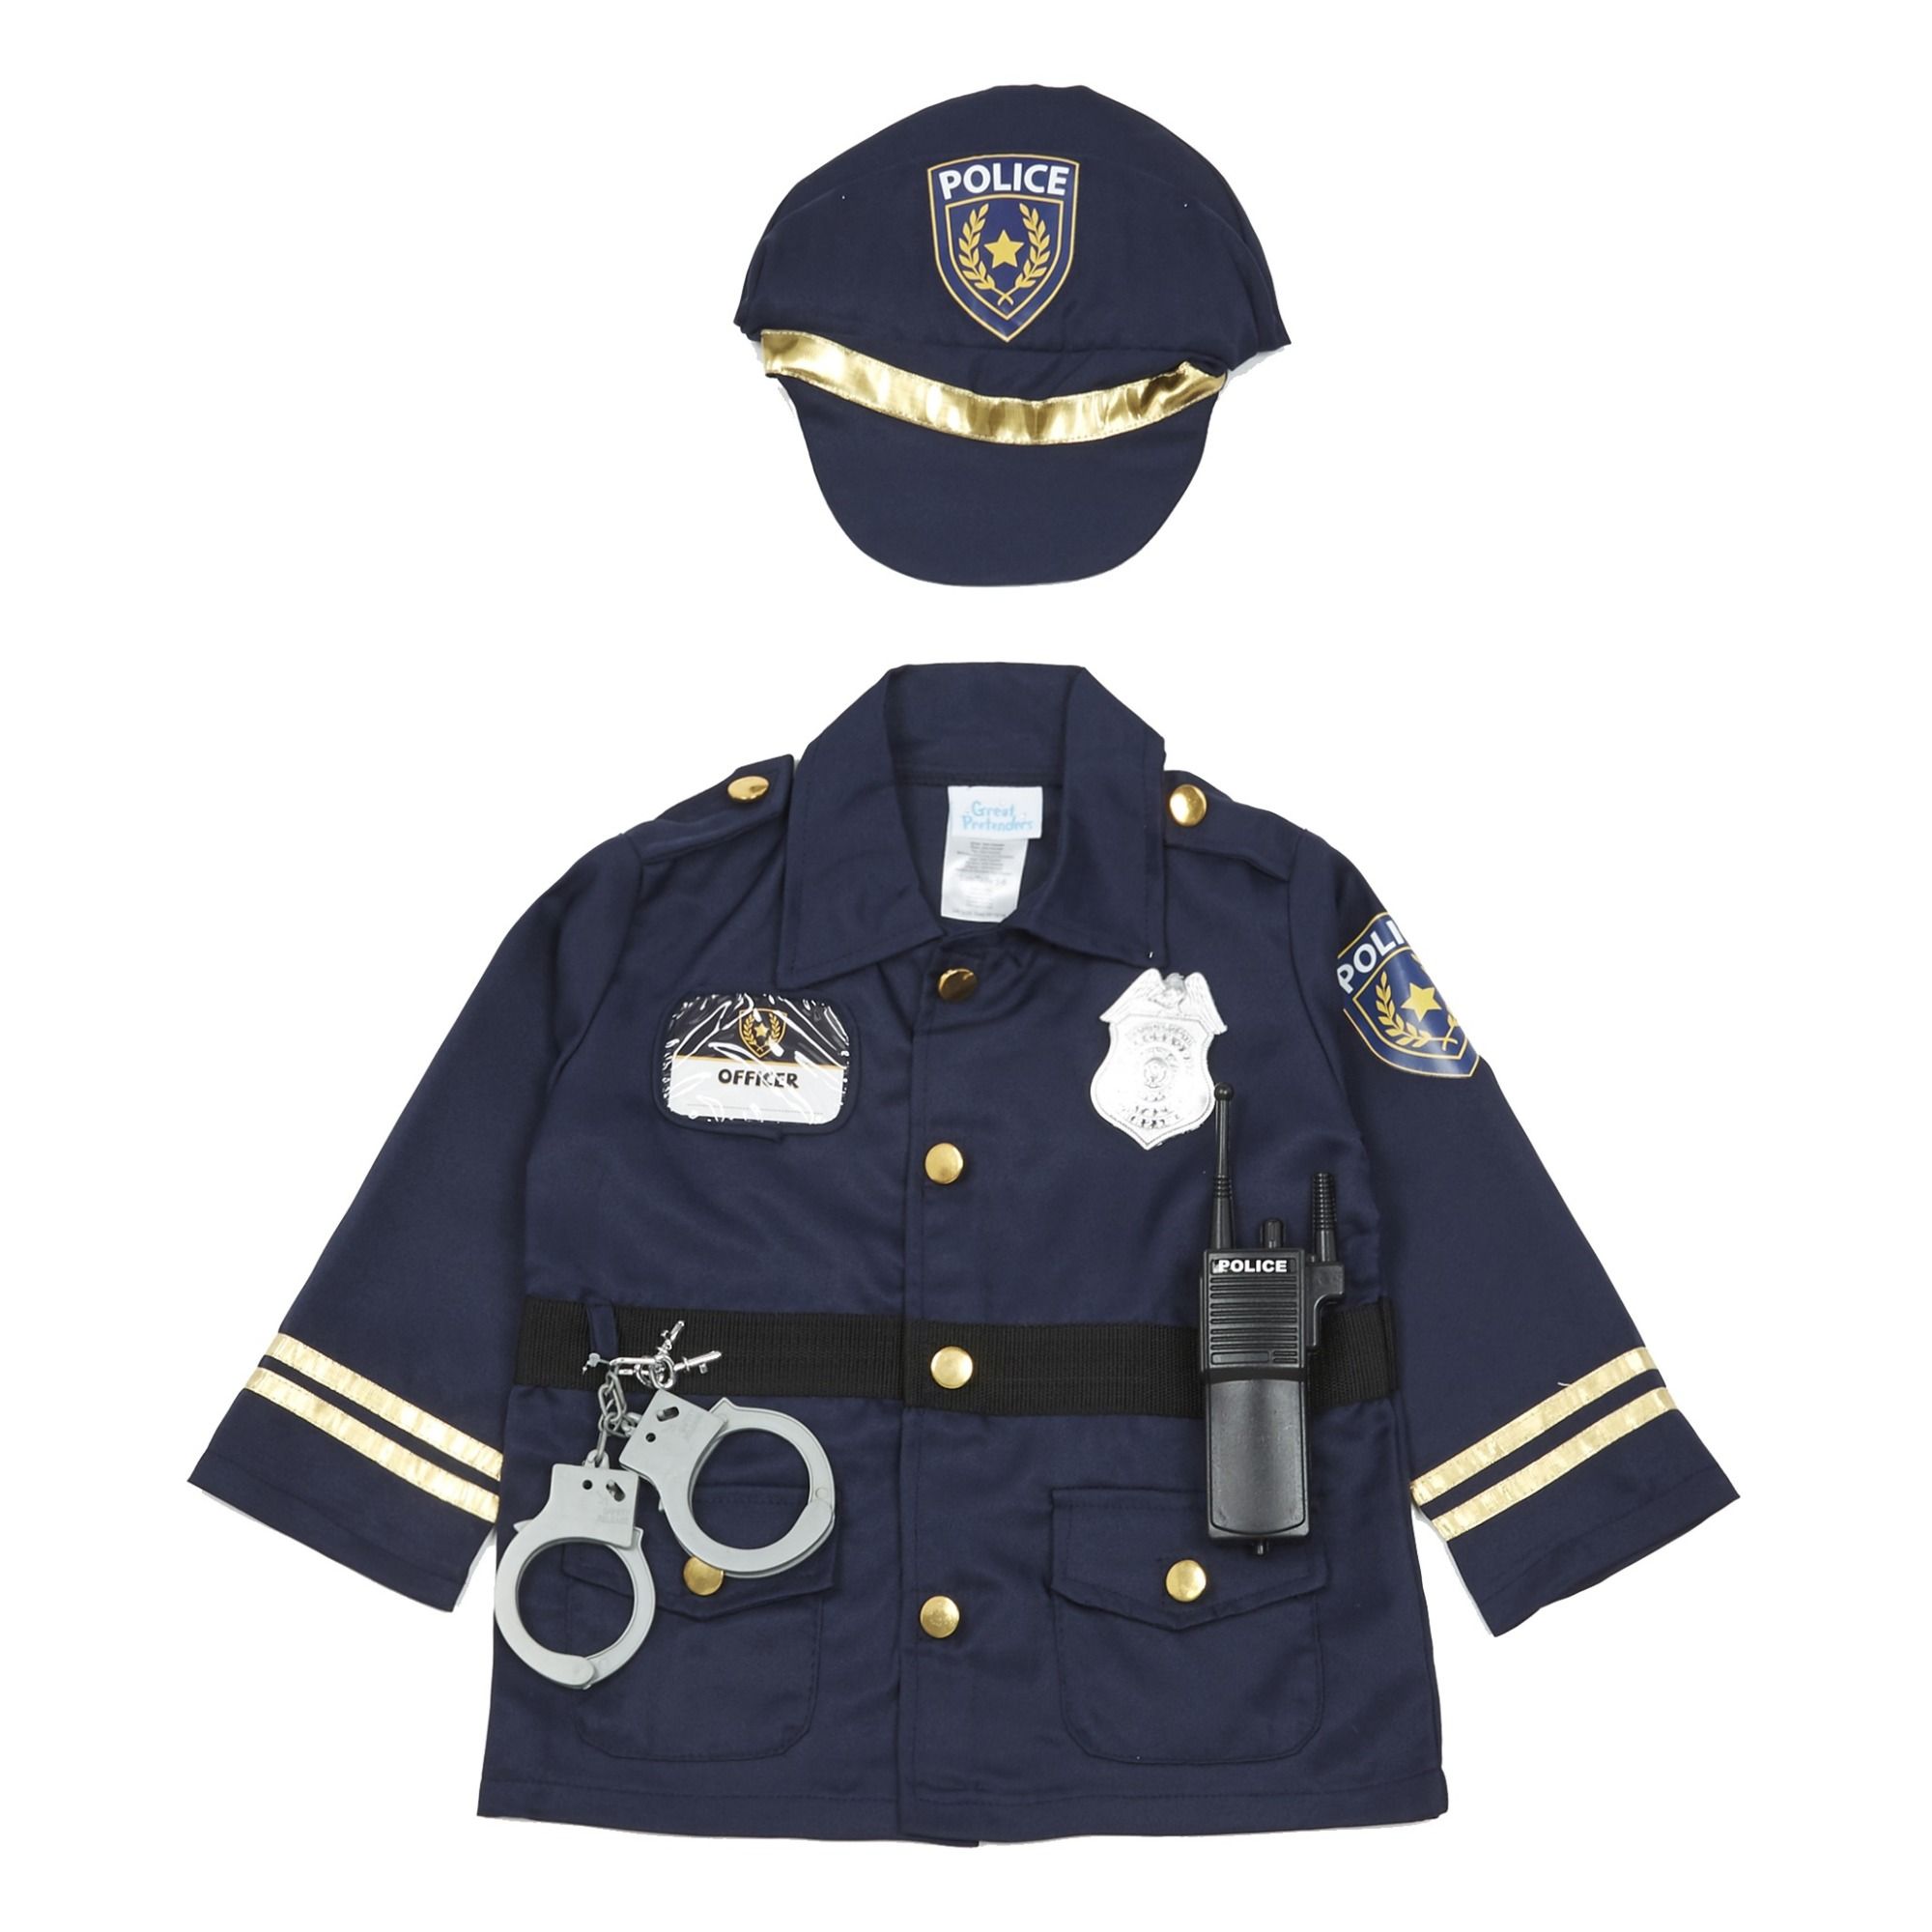 FANCY DRESS # POLICE COP BLUE PLATFORM SHOES SIZE 5 